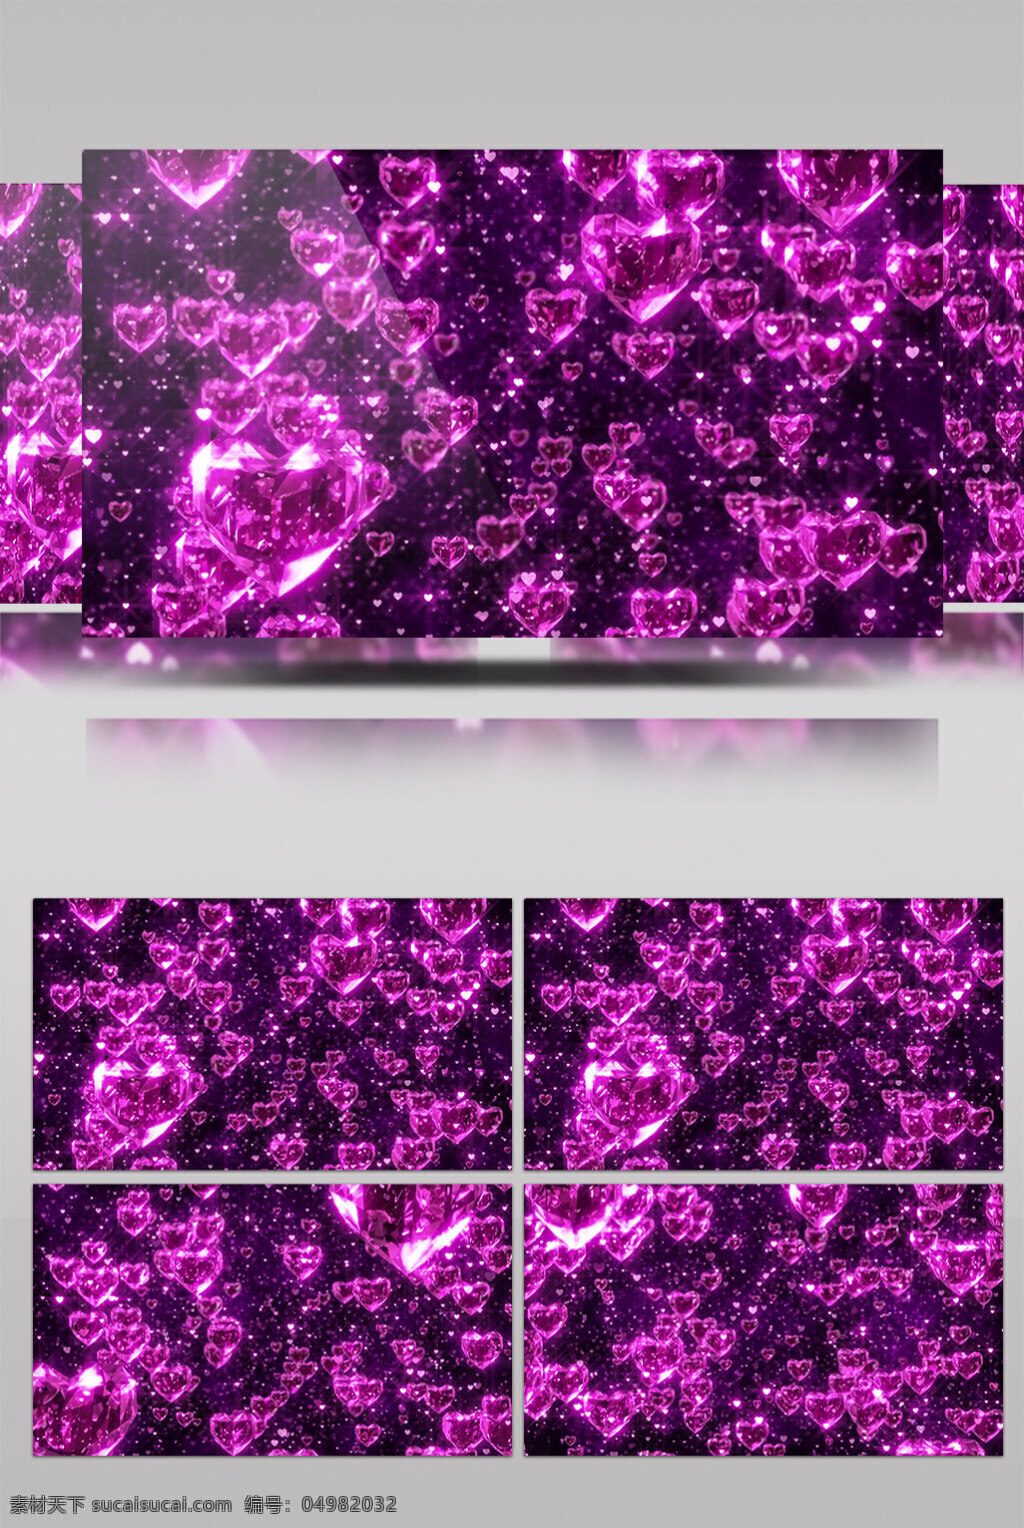 紫色 粒子 视频 紫色花海 粒子光斑 视觉享受 电脑屏幕保护 高清视频素材 3d视频素材 特效视频素材